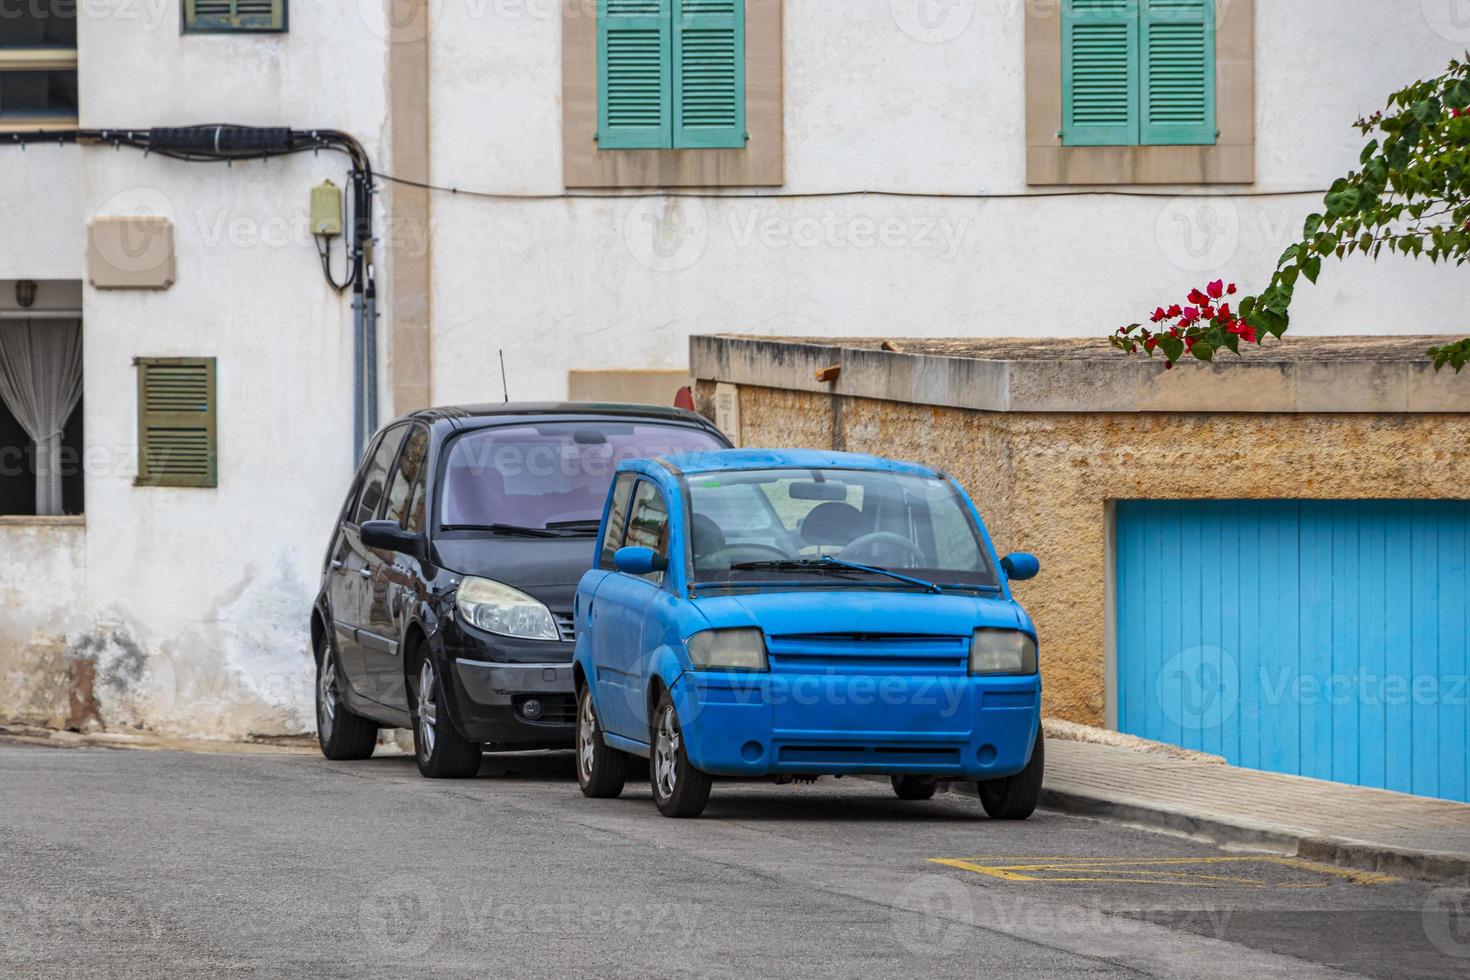 Pequeño coche azul divertido aparcado cala figuera mallorca españa. foto